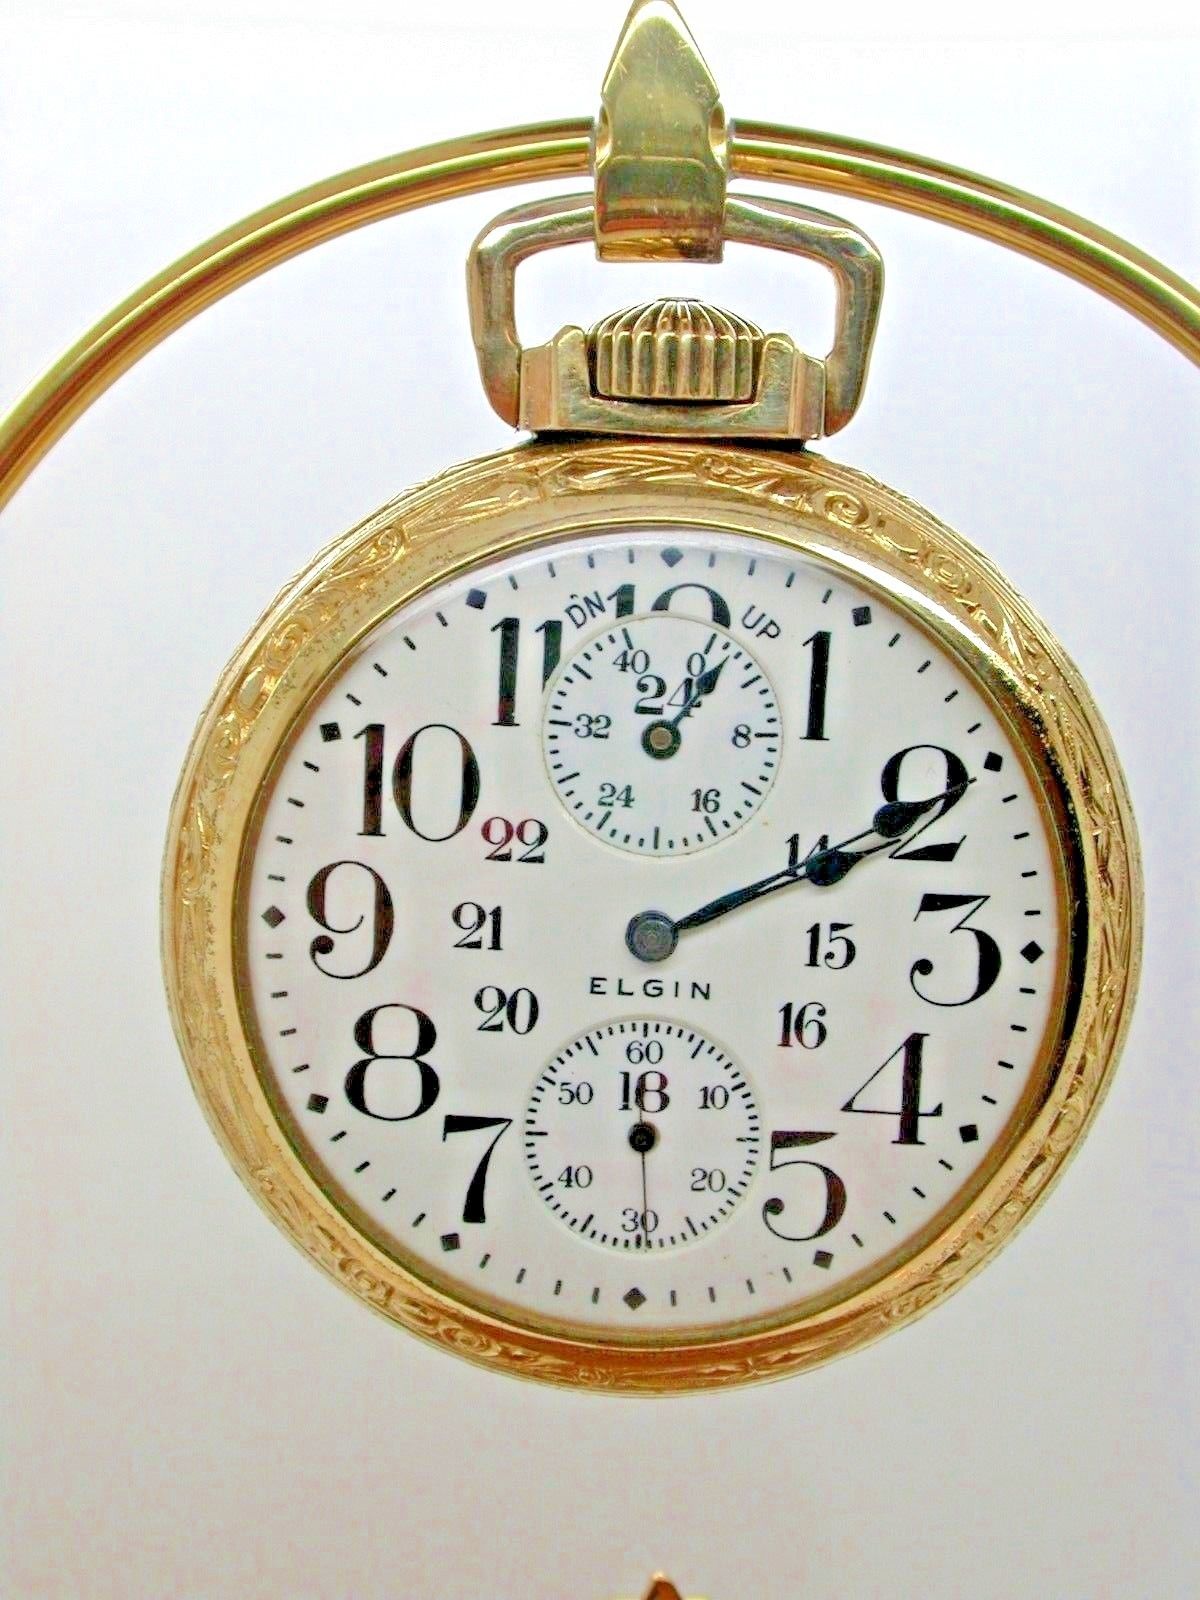 1911 rolex pocket watch